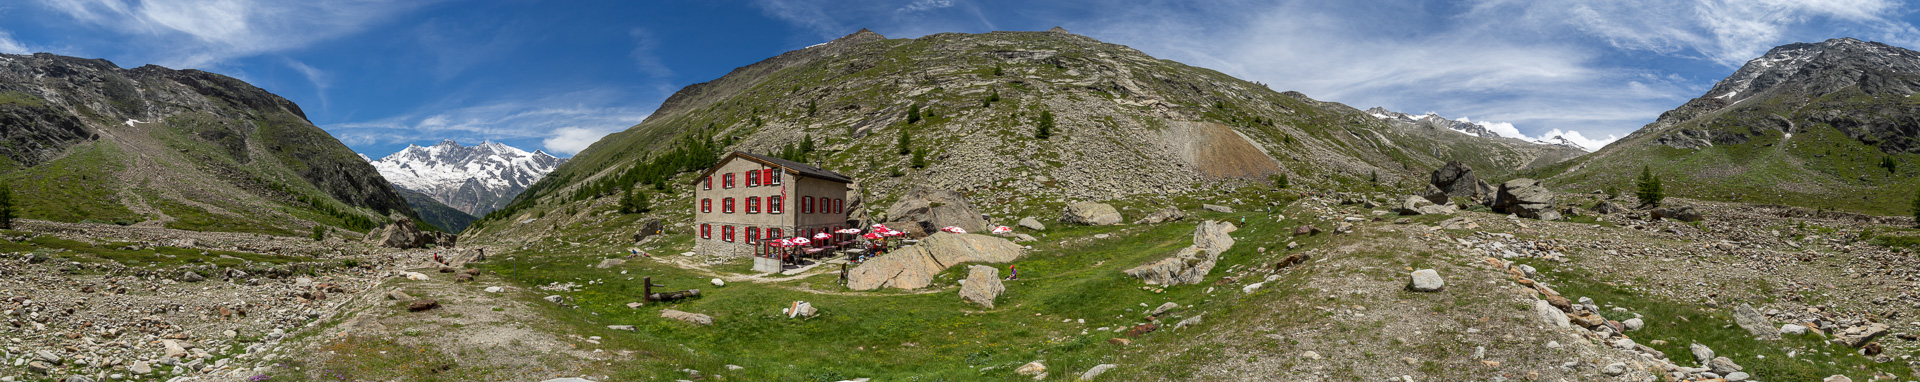 Panorama im Aufstieg zur Almageller Hütte.